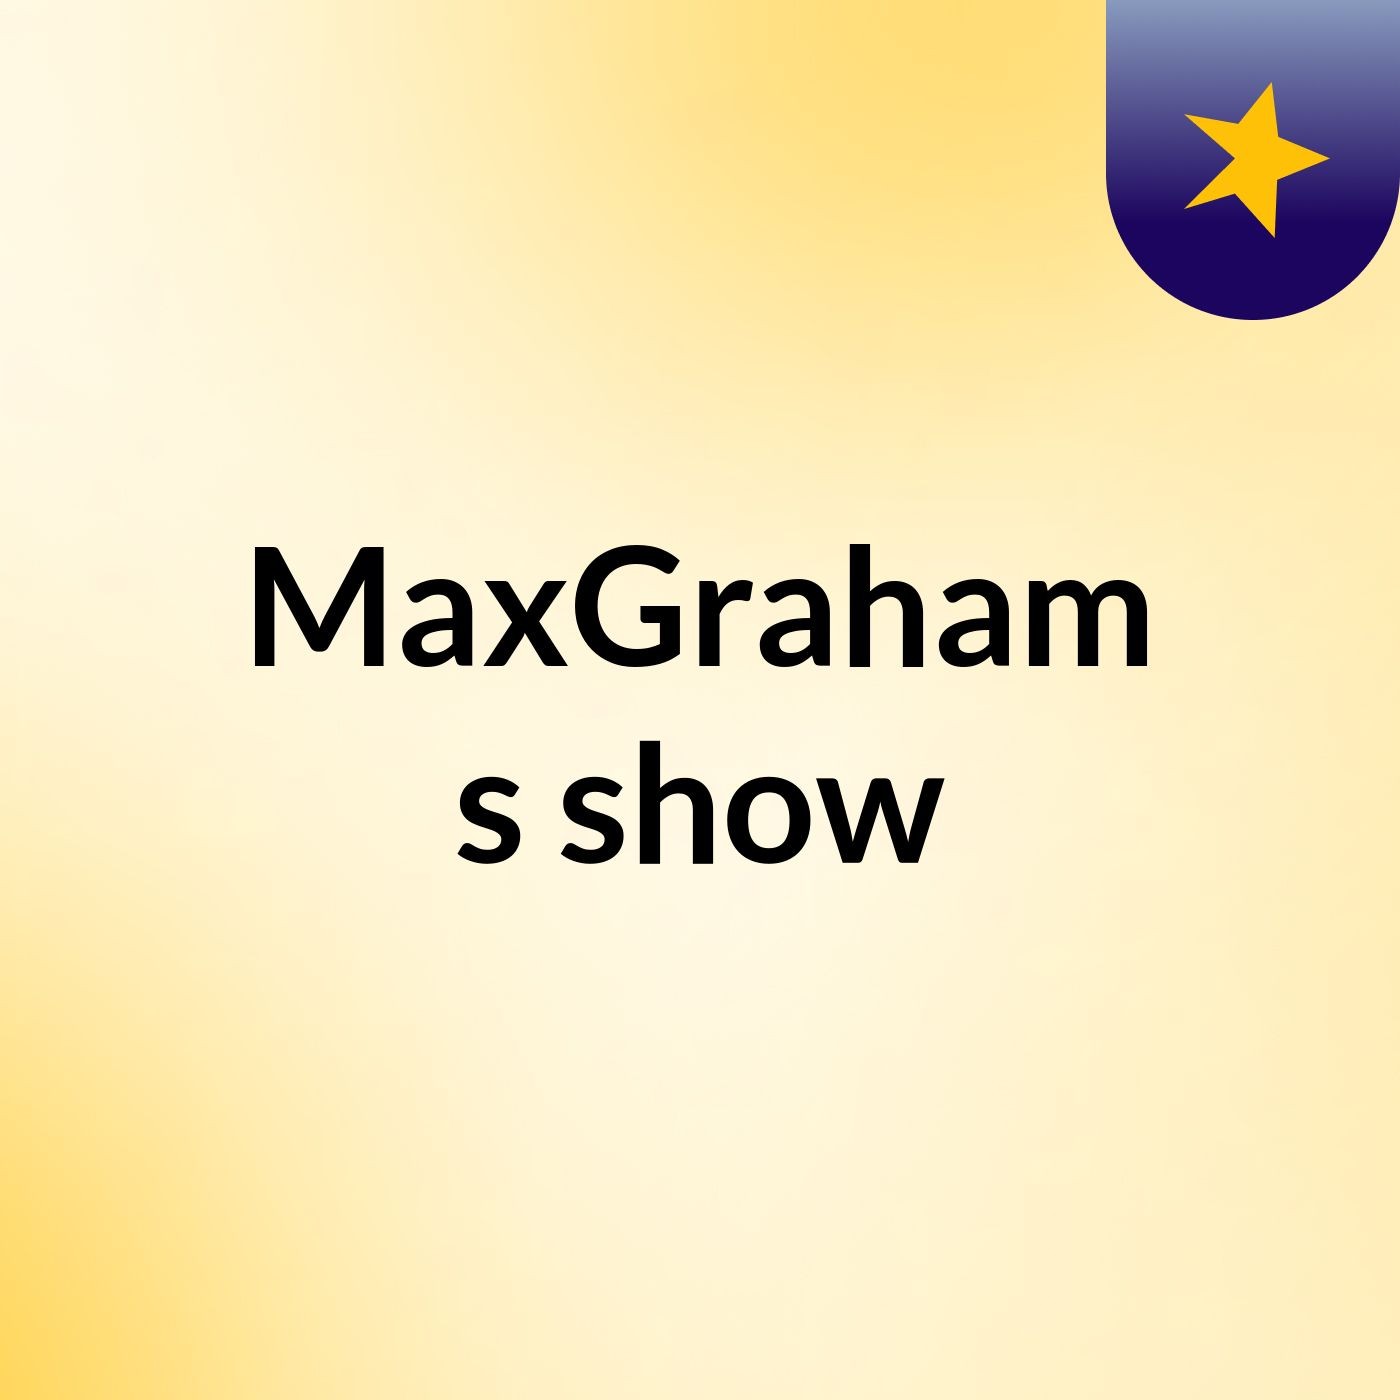 MaxGraham's show